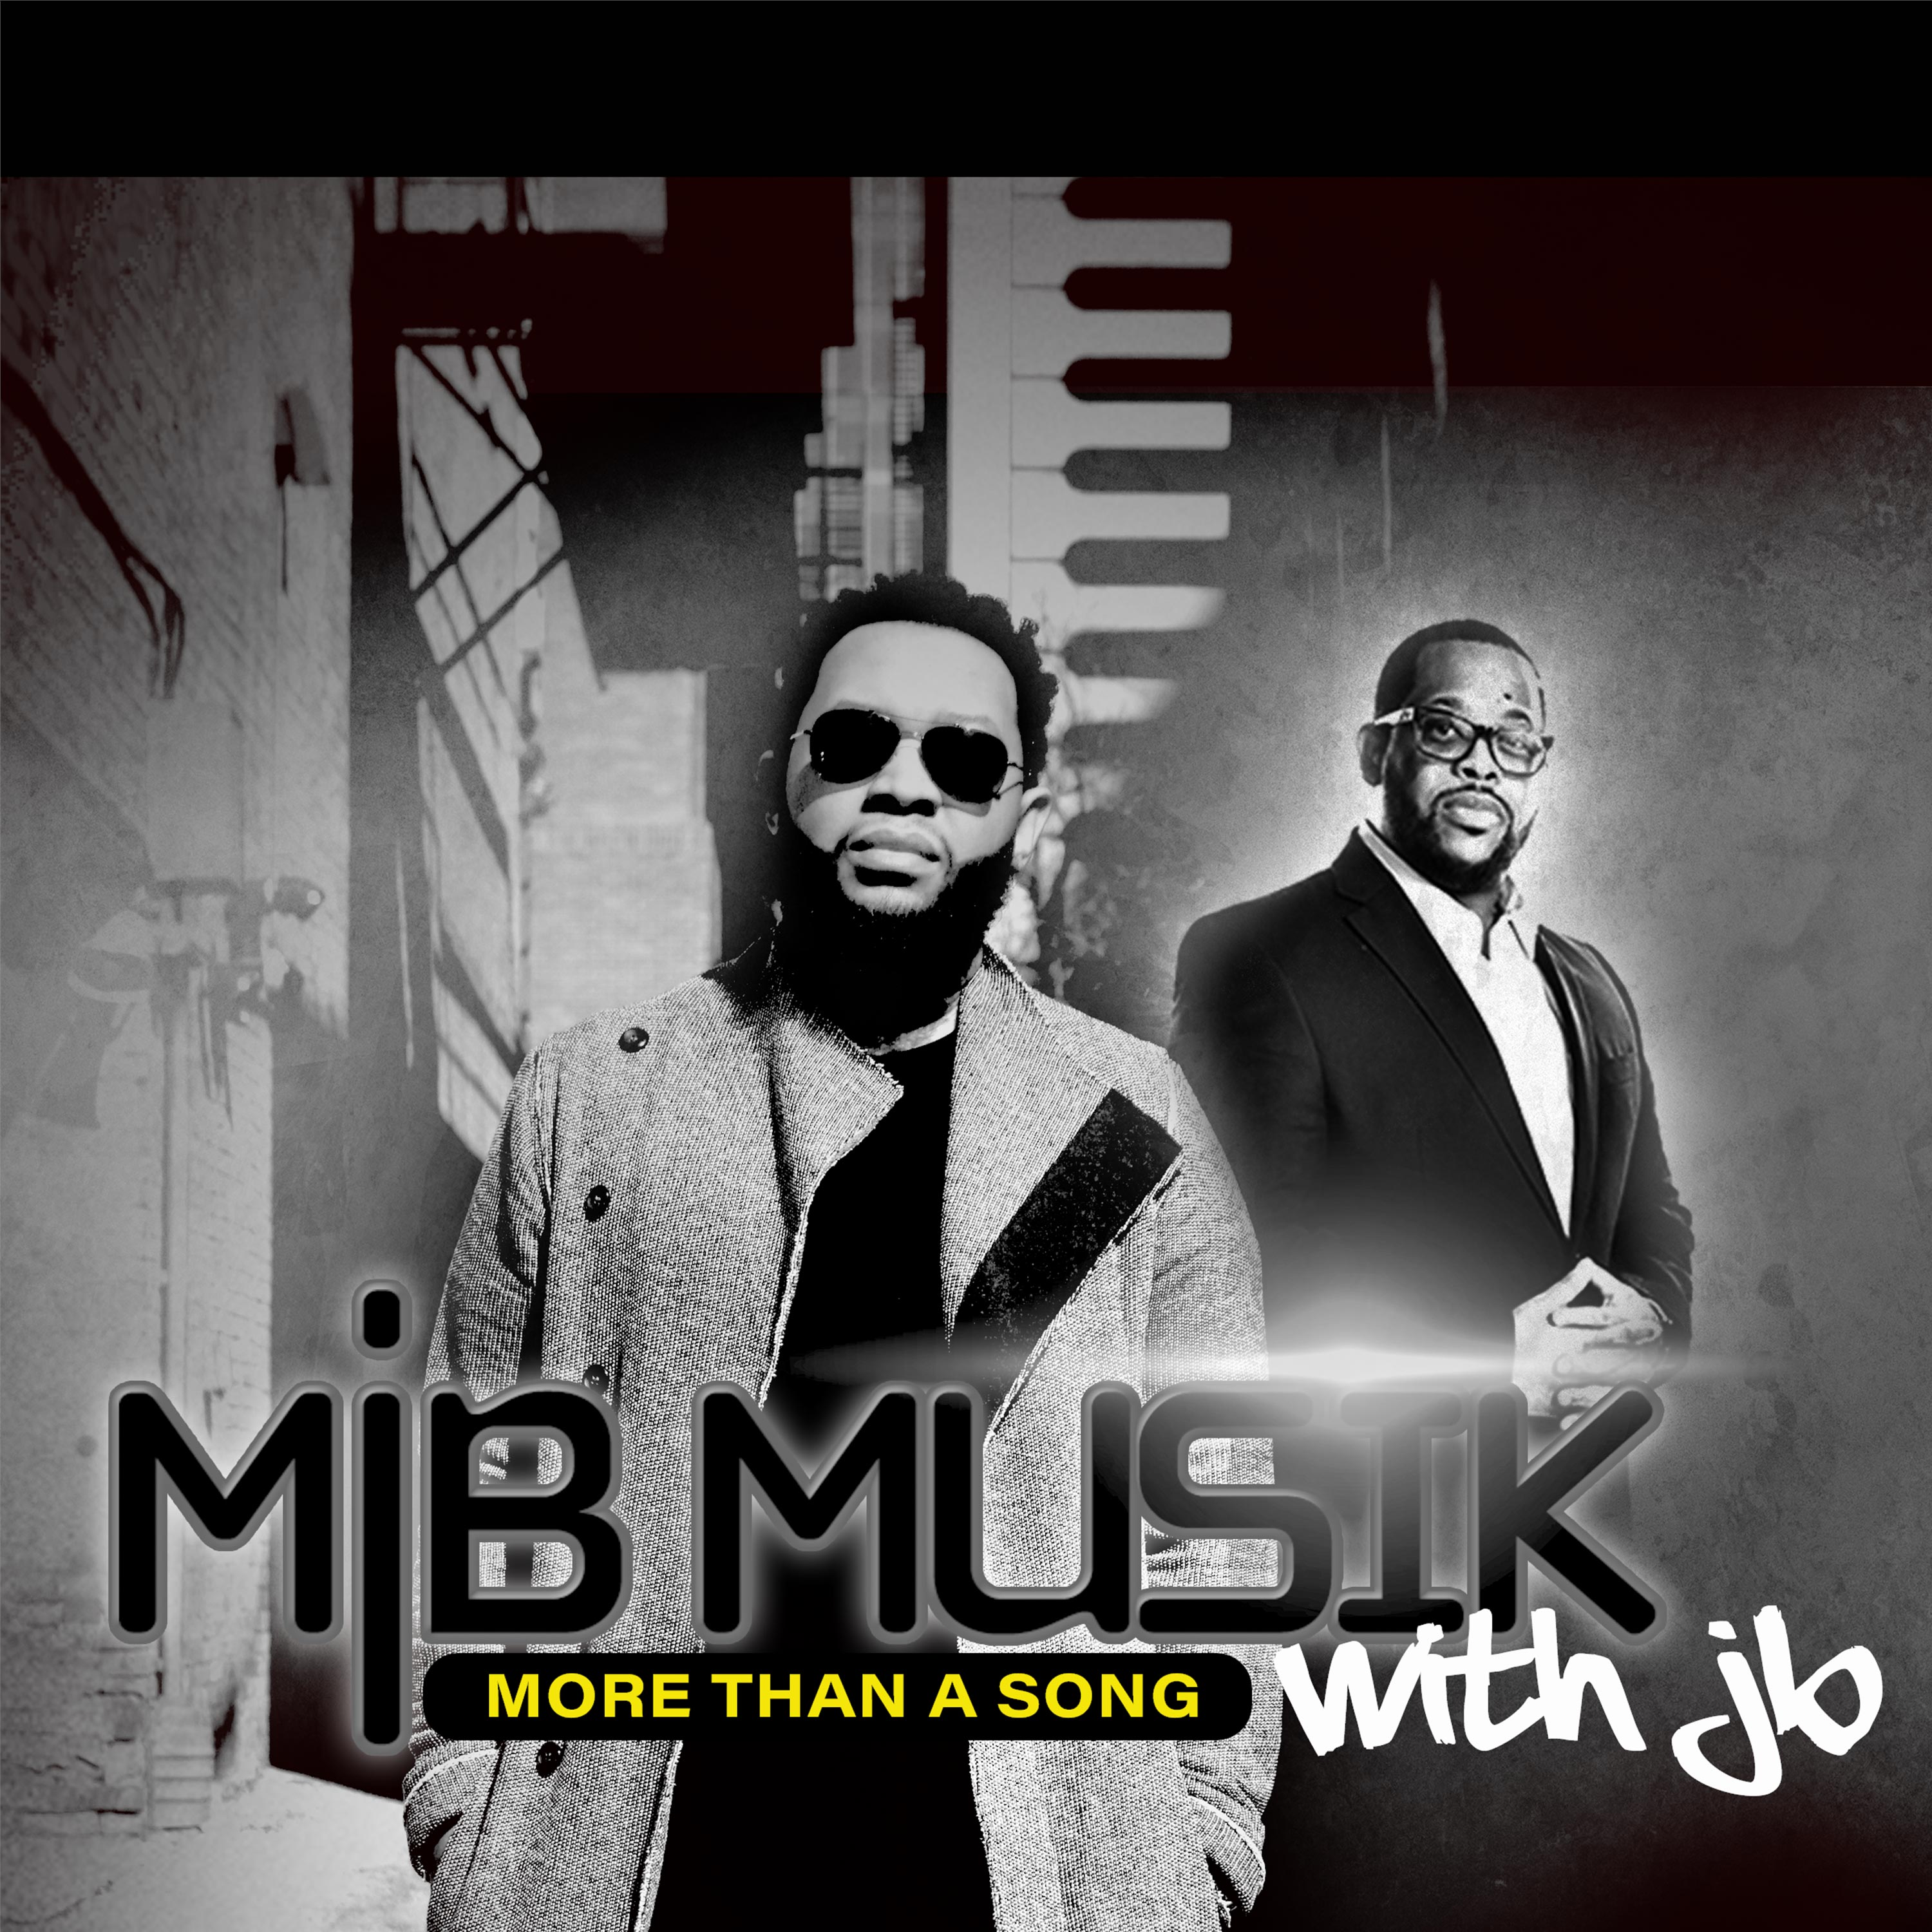 MJB Musik with JB